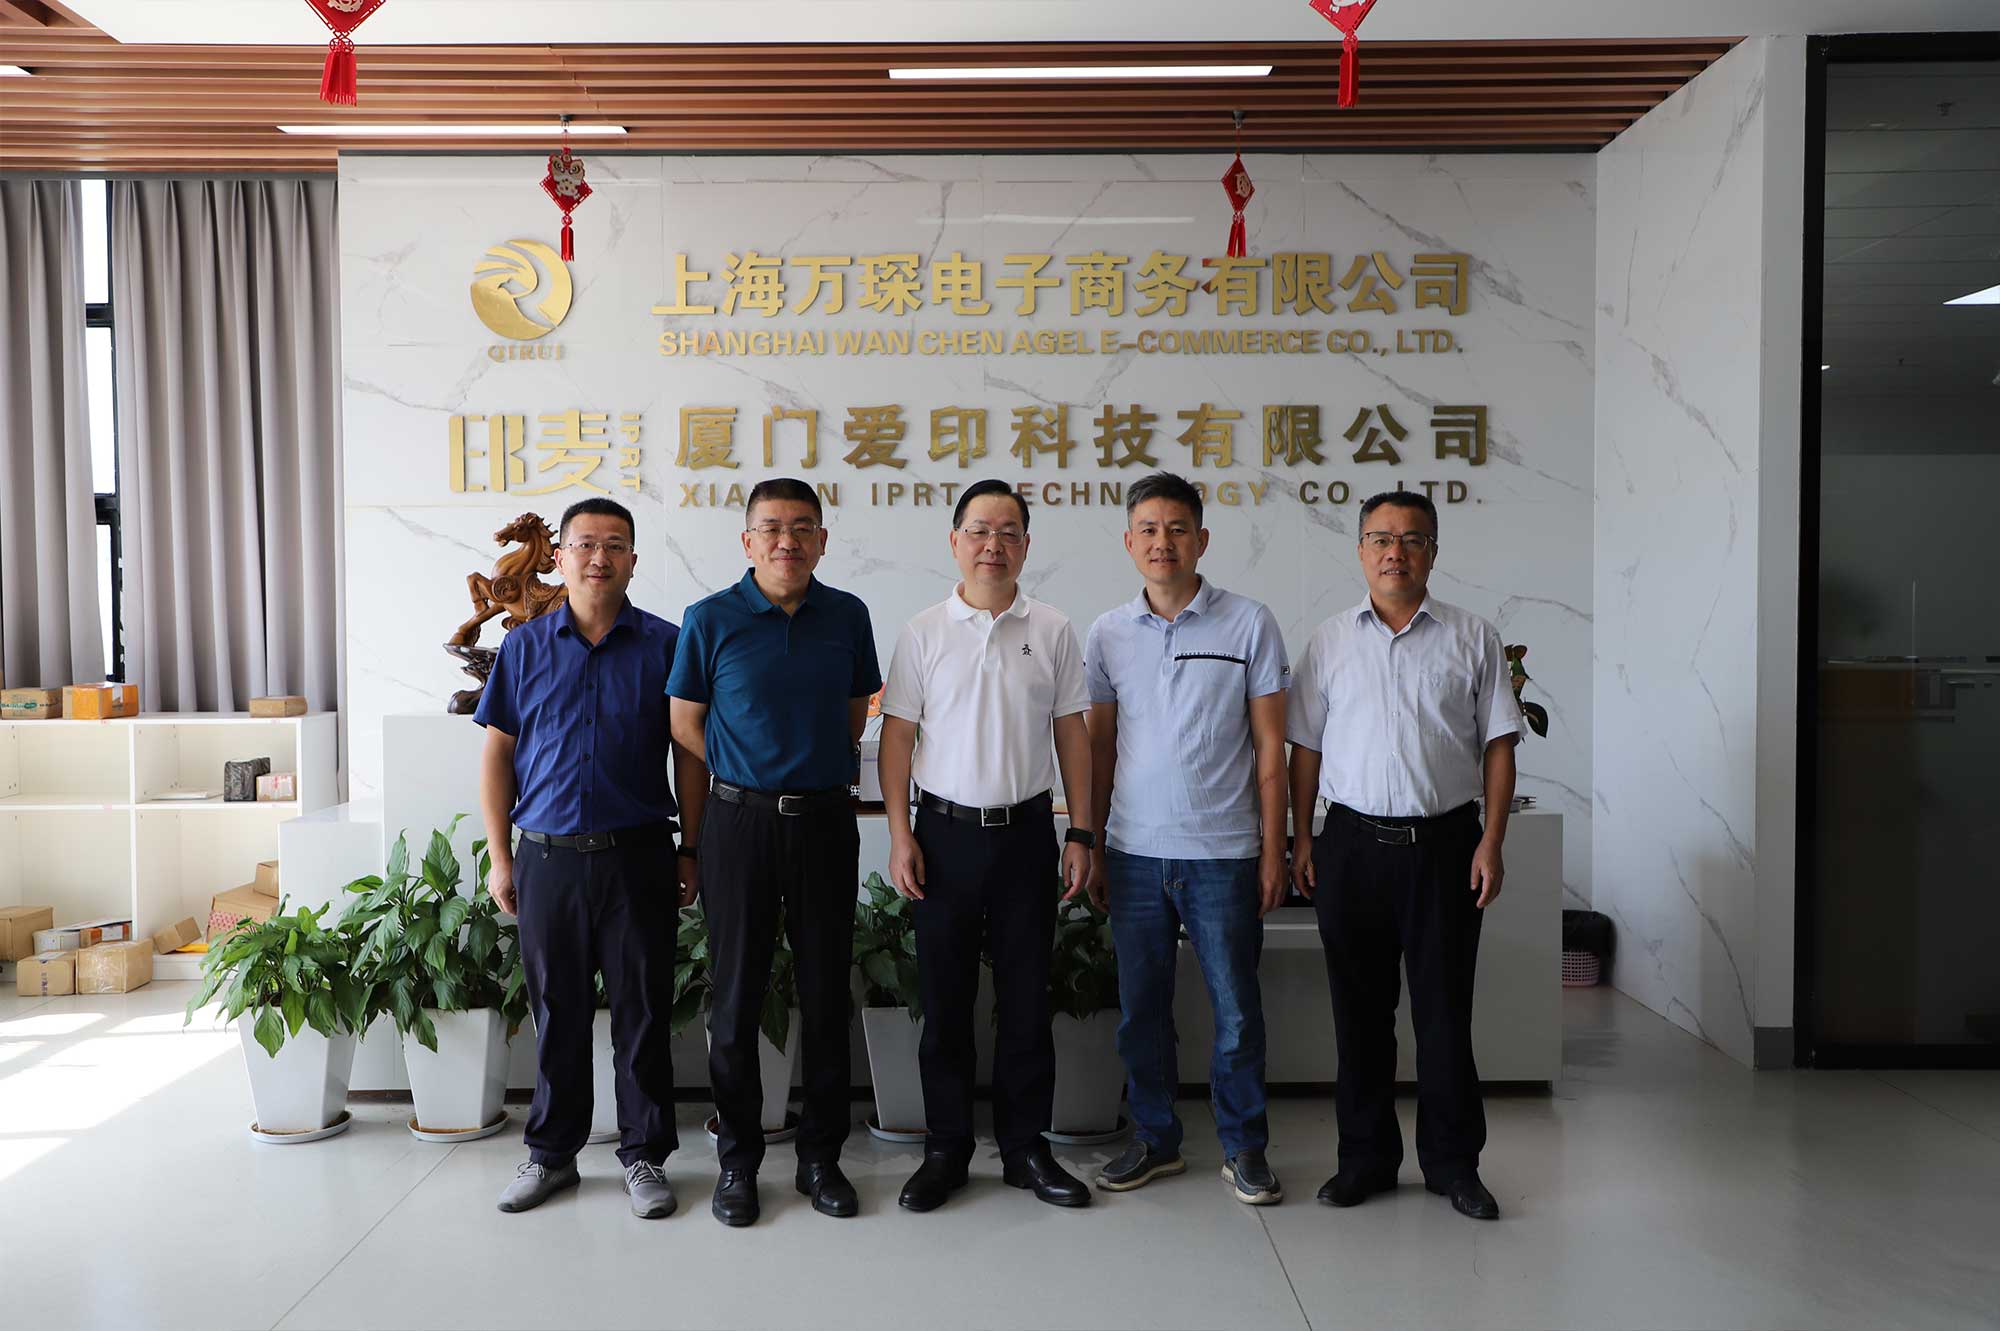 Der Vizepräsident des CPPCC Xiamen, Li Qinhui, und andere besuchten IPRT Technology zur Untersuchung und Beratung